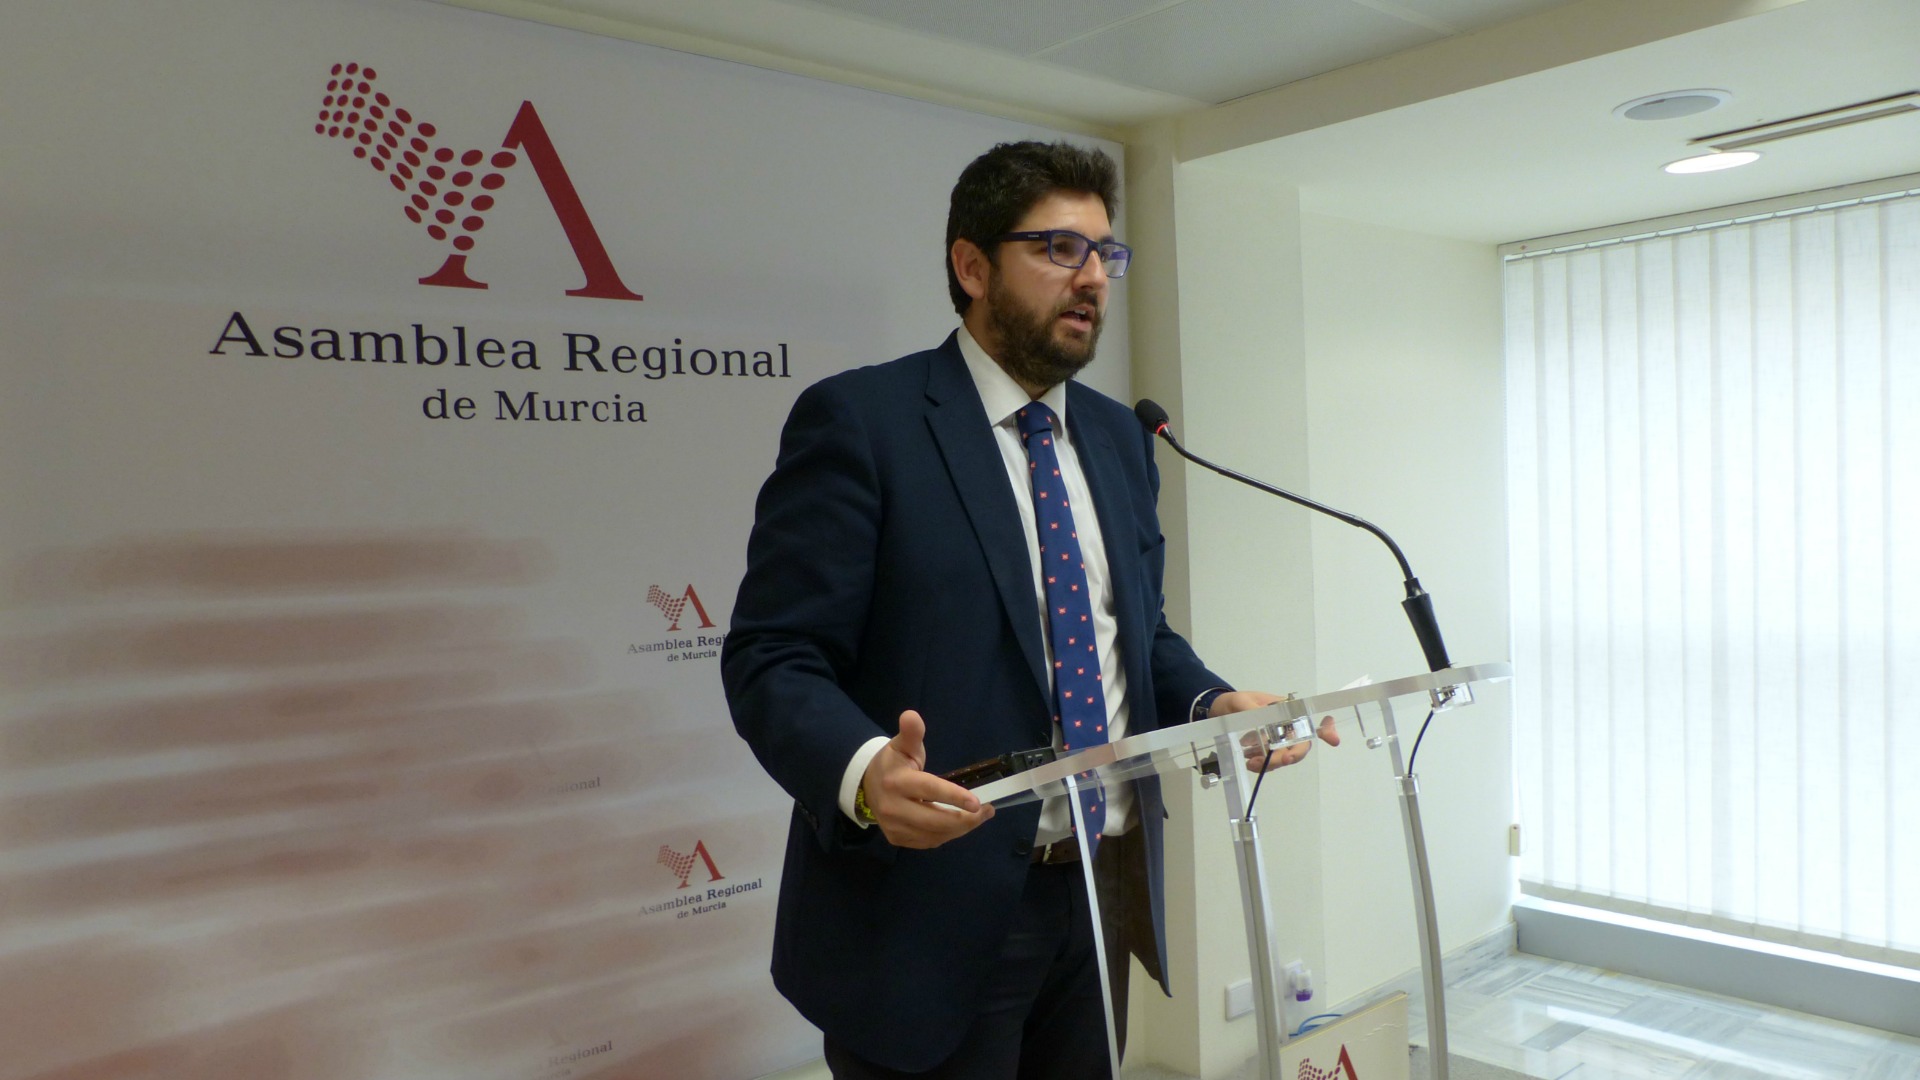 El popular López Miras, elegido presidente de Murcia gracias a Ciudadanos